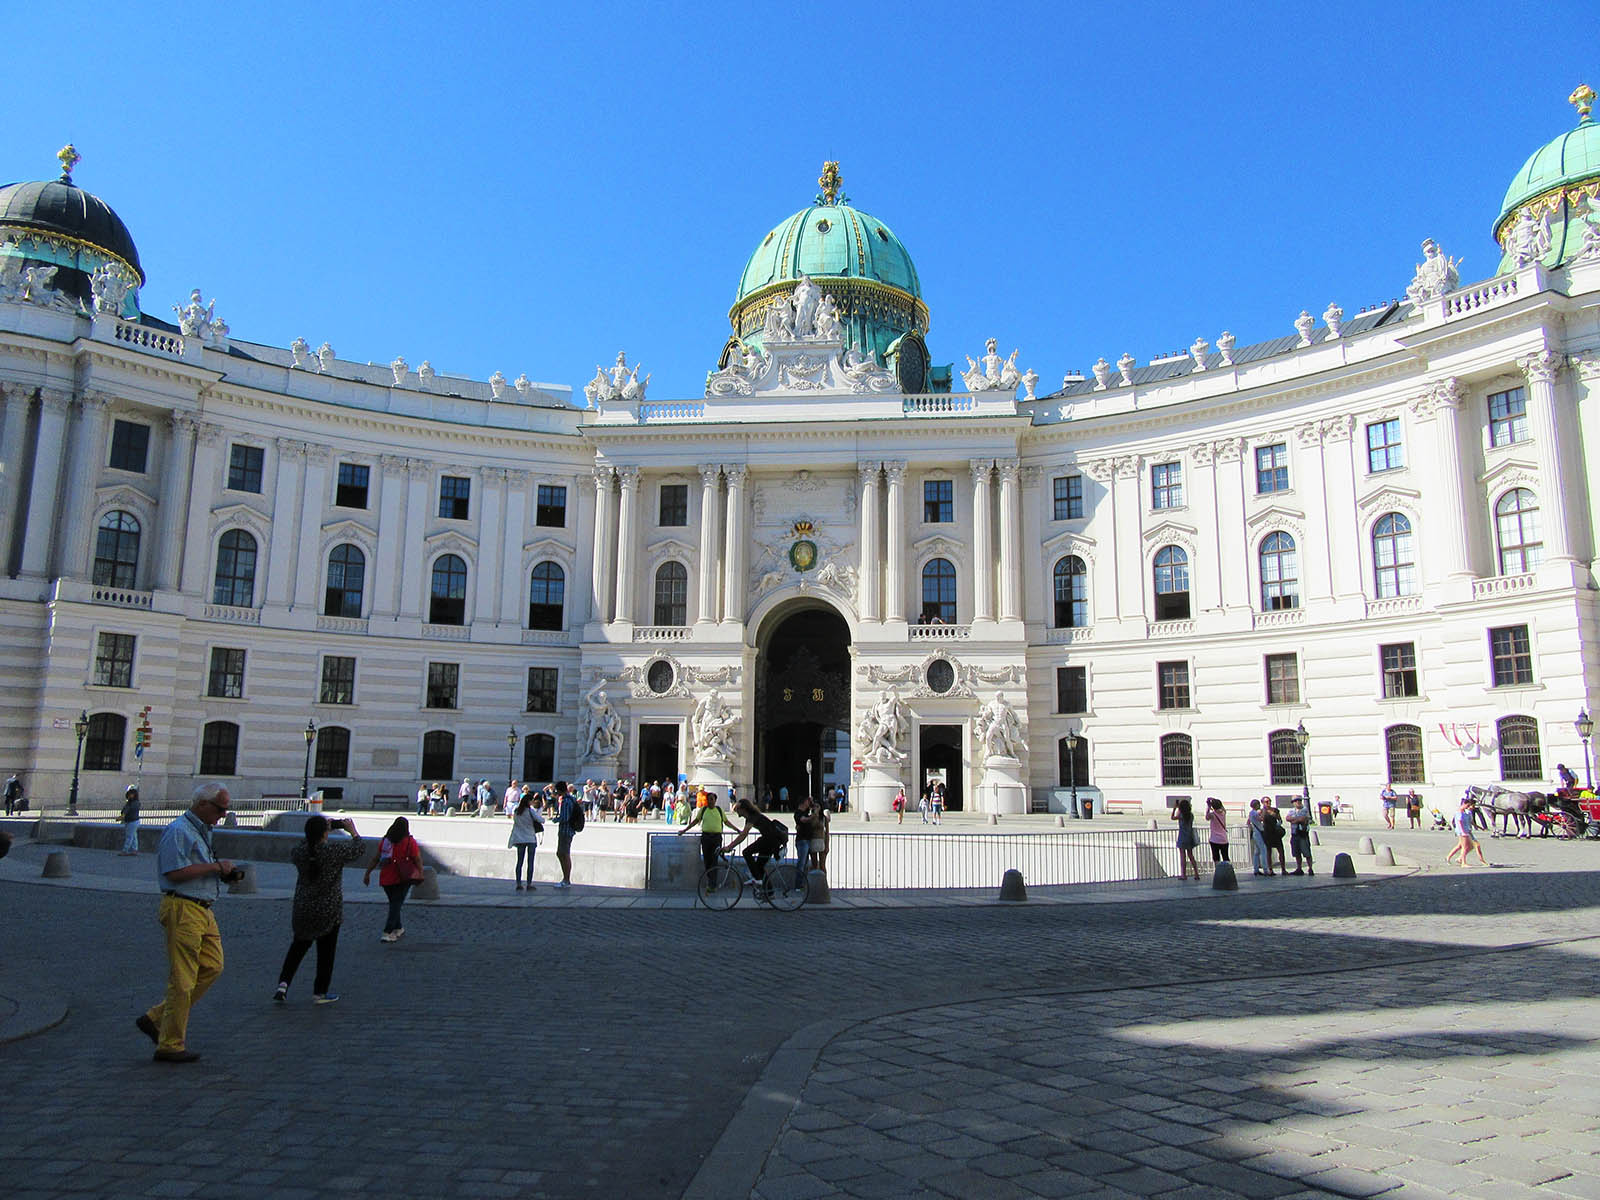 The Hofburg. Credit: Carolina Valenzuela